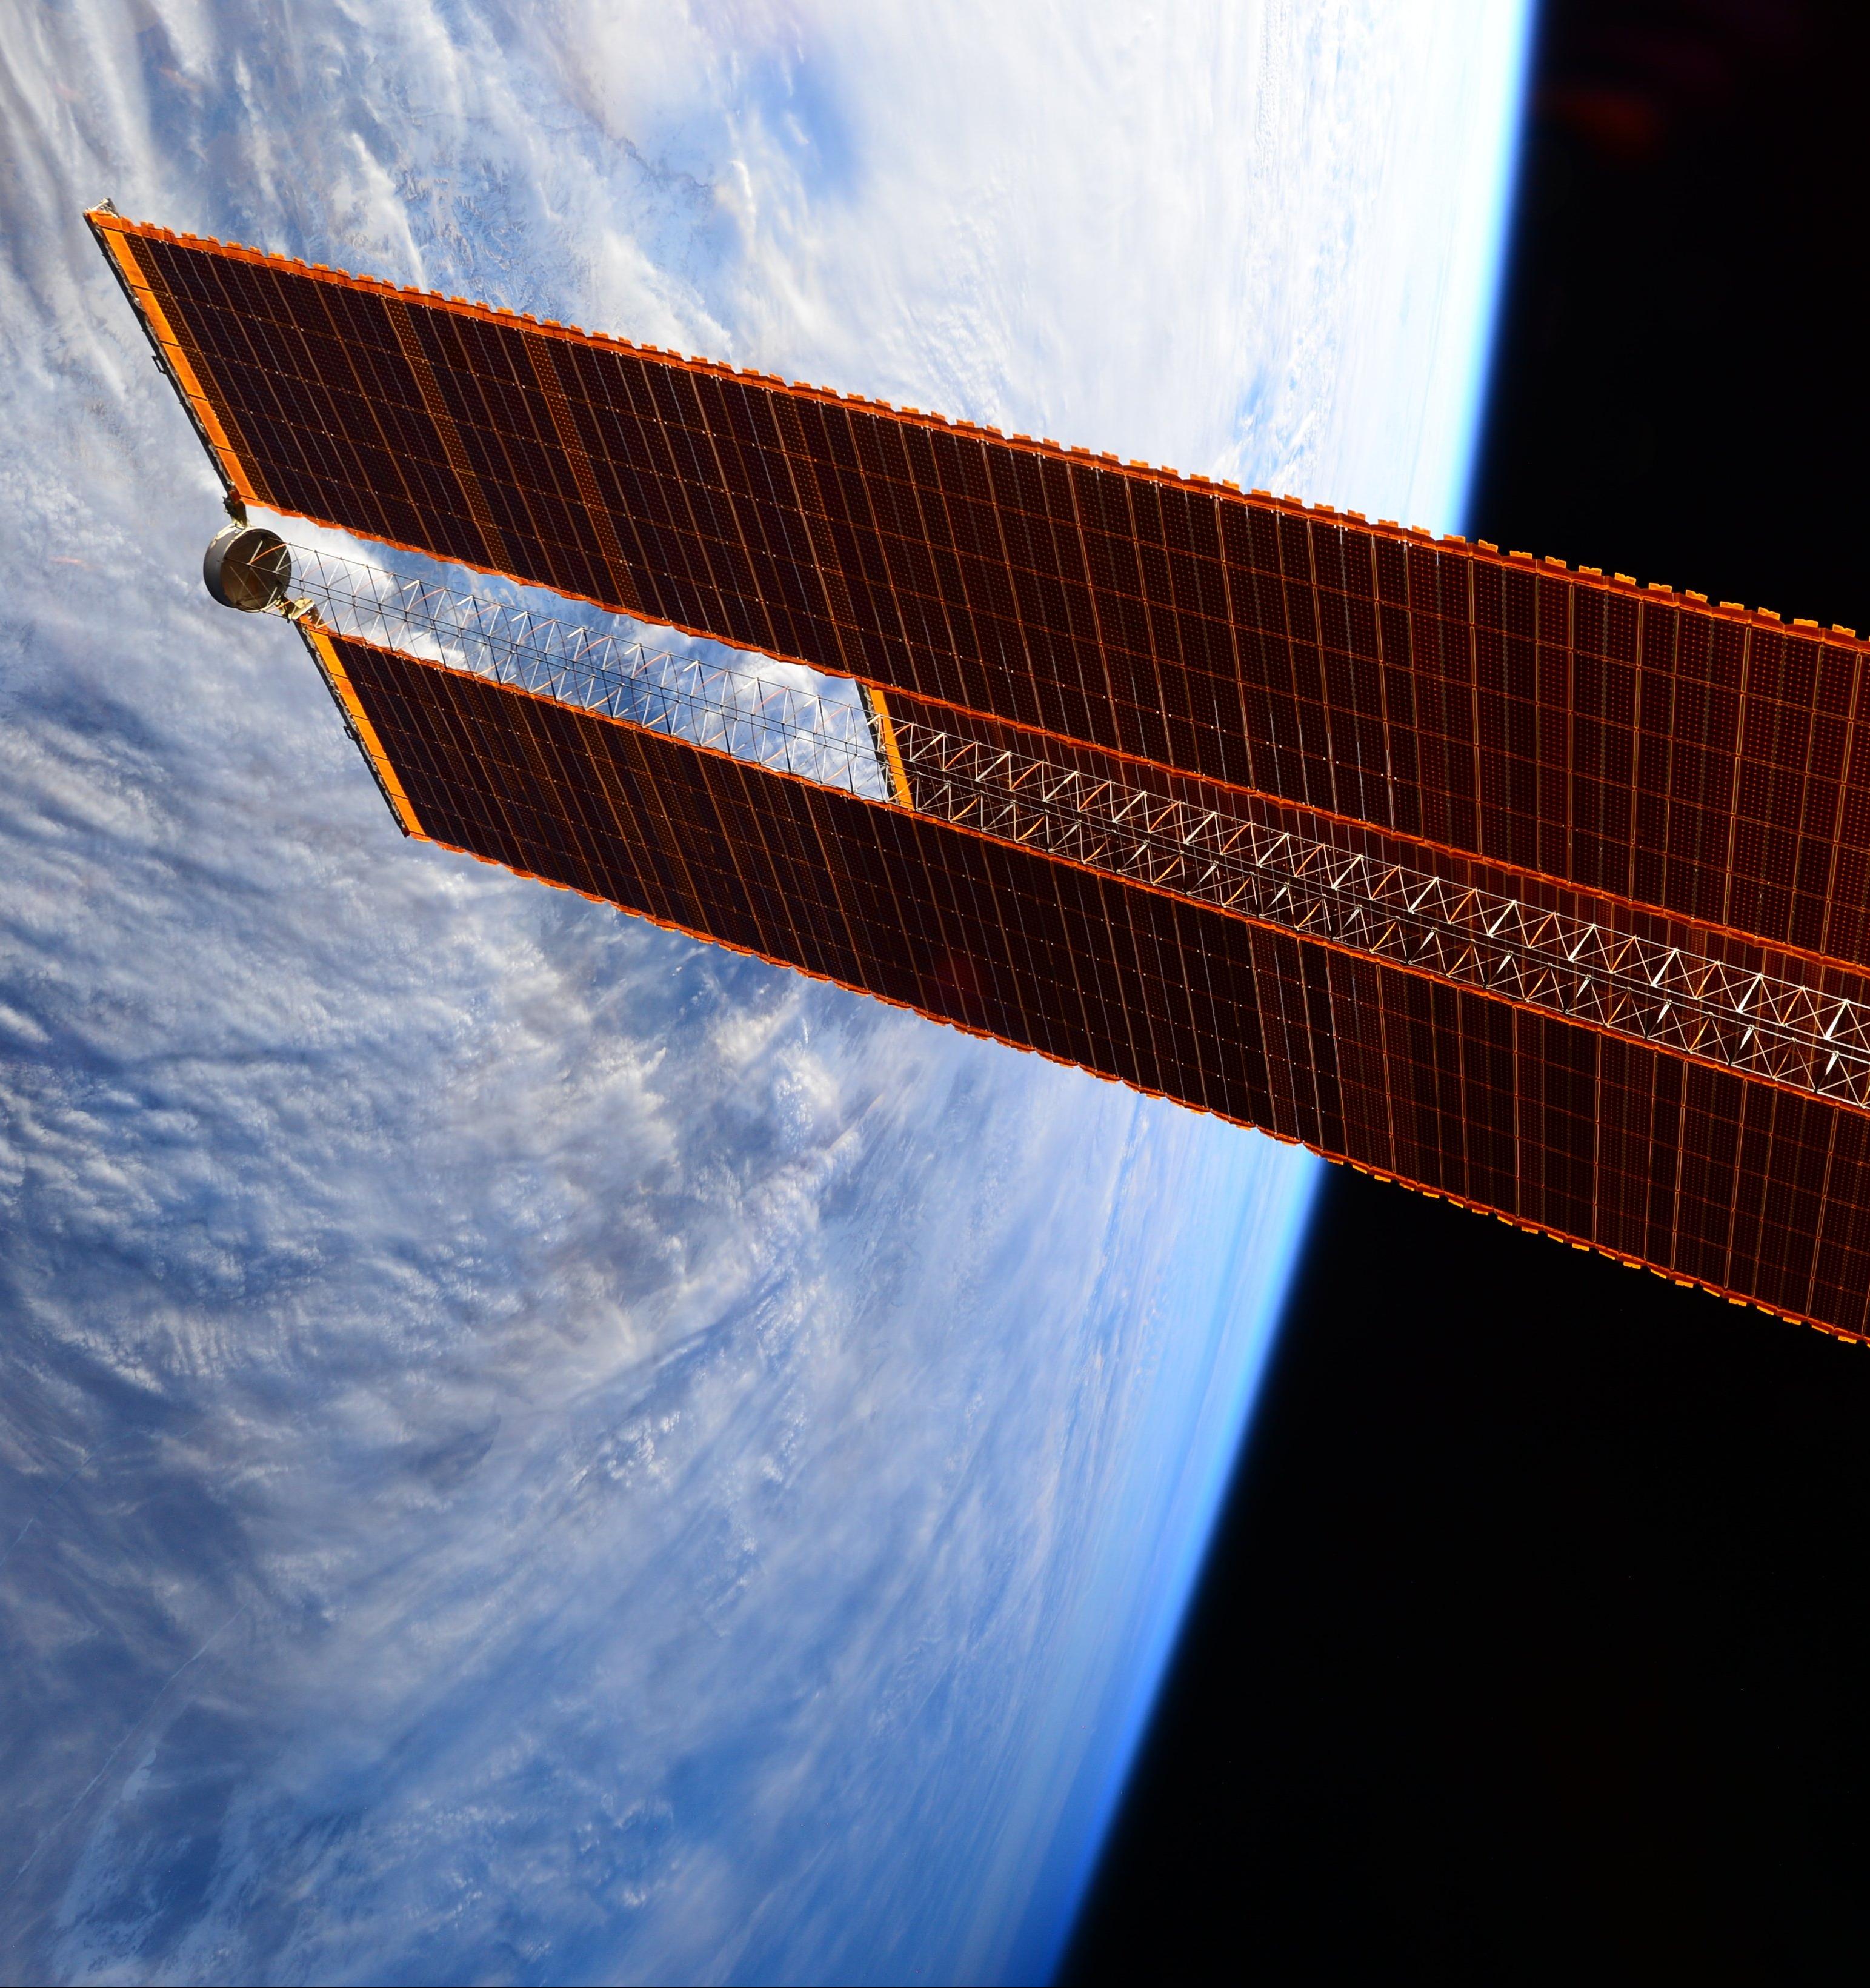 Космос и экология: переработка воды и пластика на МКС, солнечная электростанция на орбите и уборка космического мусора